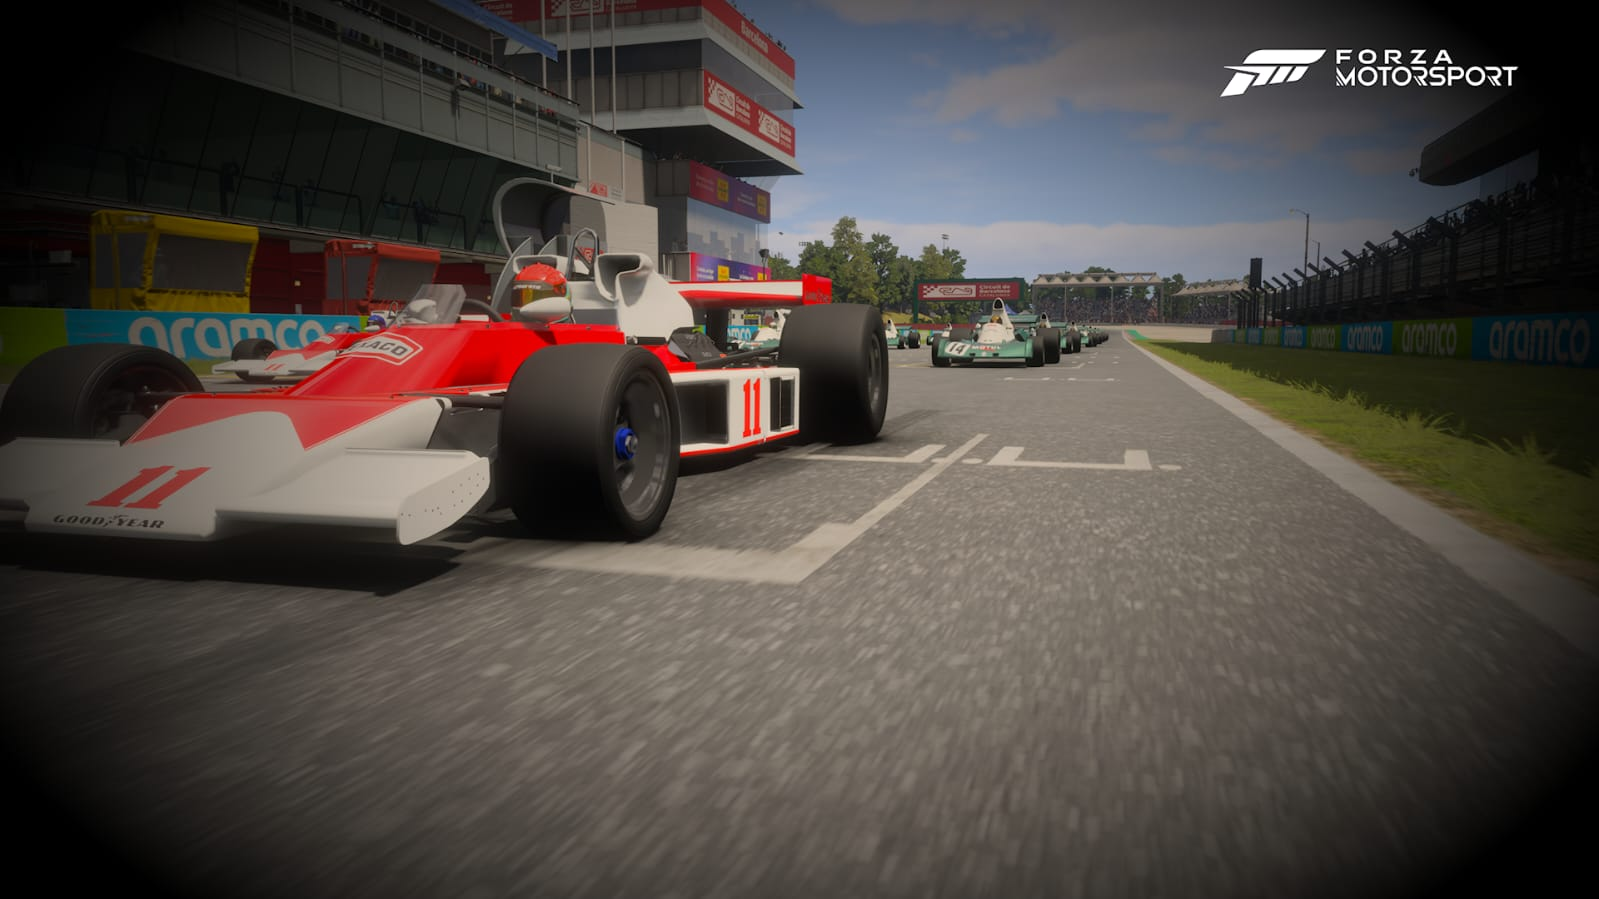 Forza Motorsport, un exclusivo renovado a toda velocidad 15